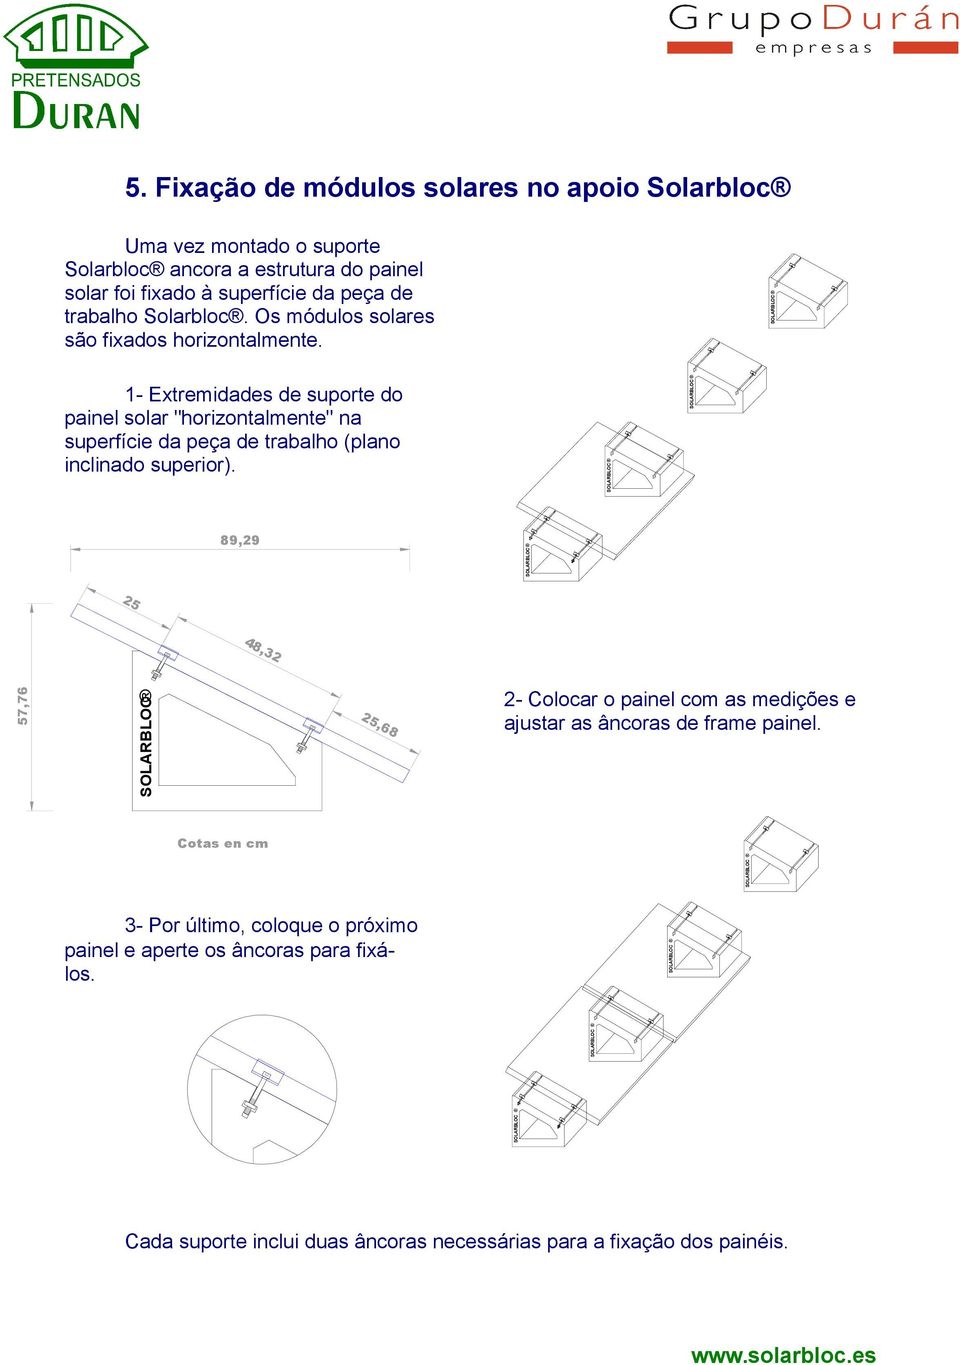 1- Extremidades de suporte do painel solar "horizontalmente" na superfície da peça de trabalho (plano inclinado superior).